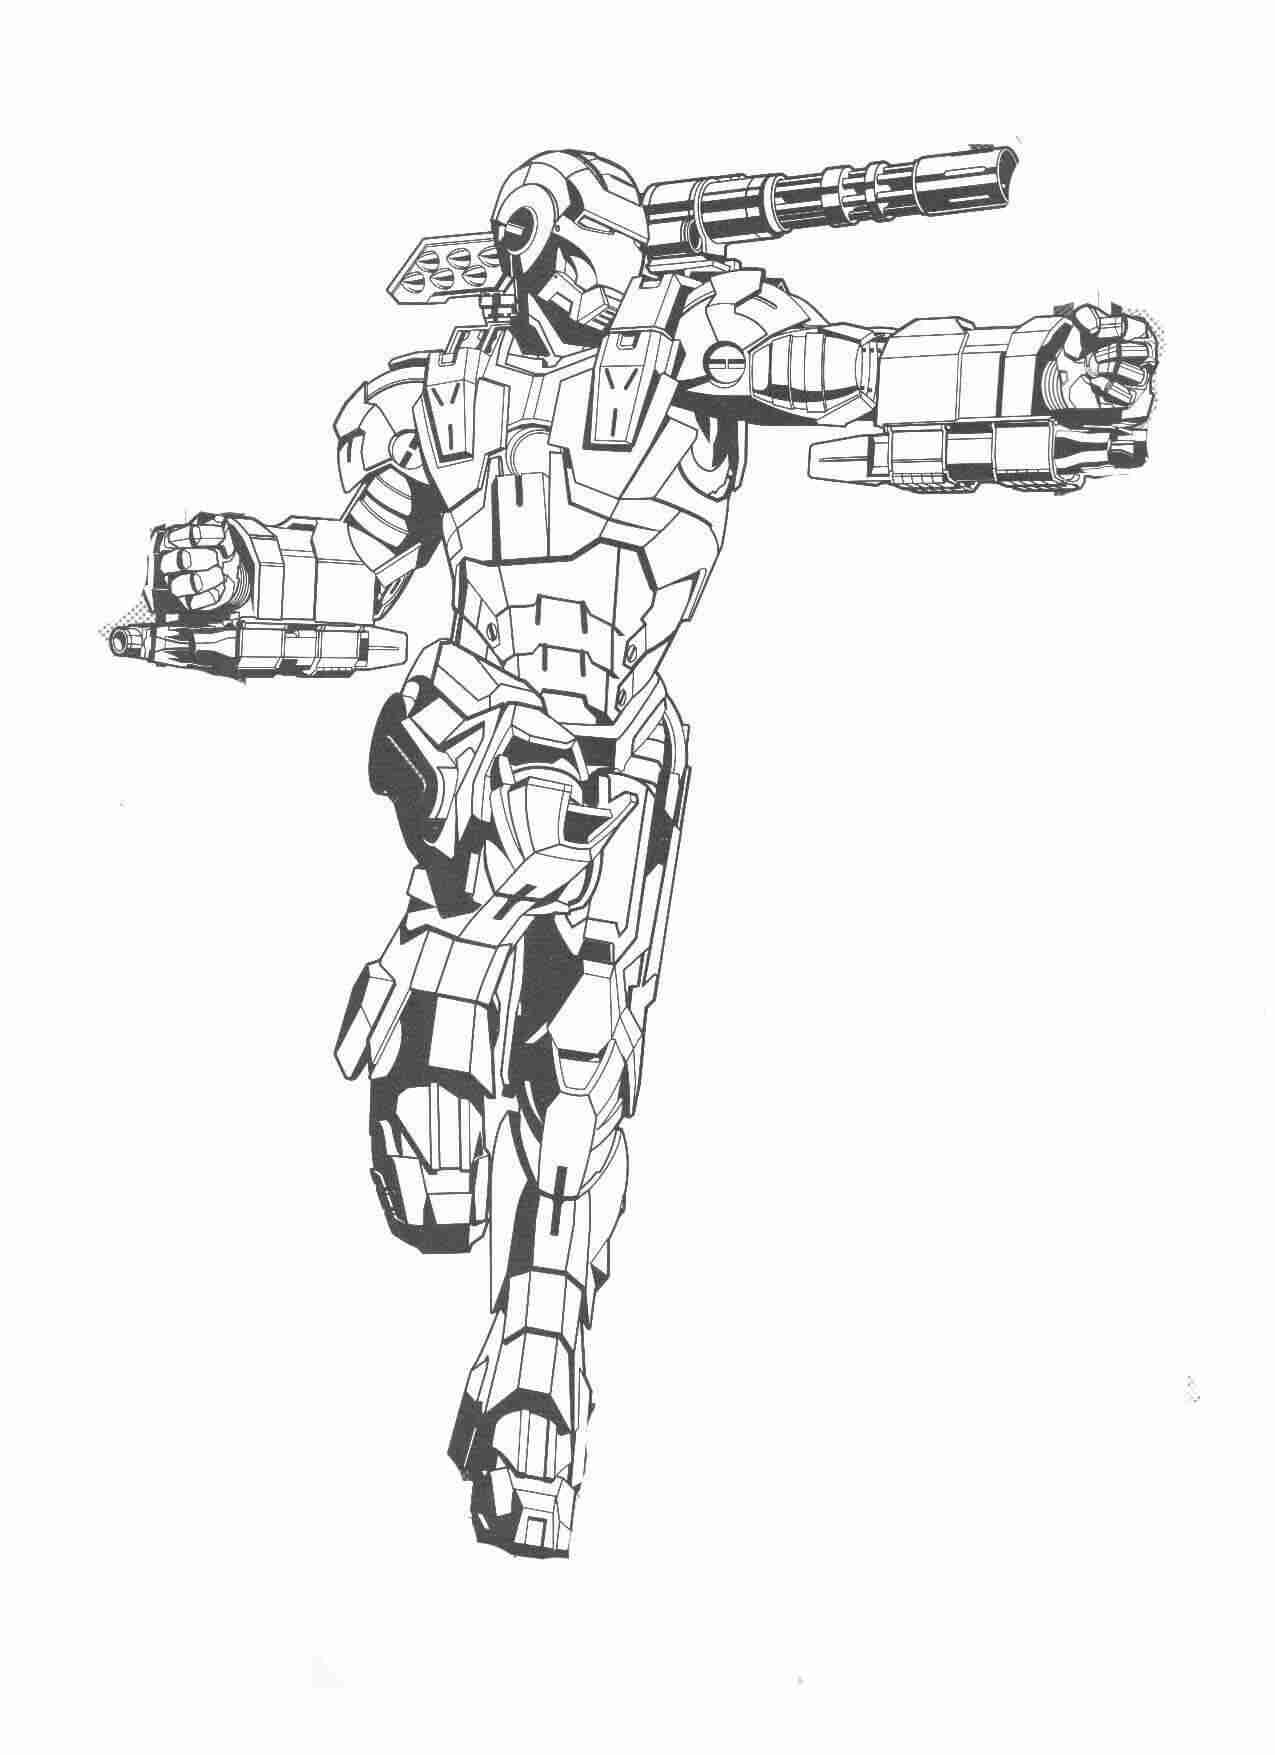 L'armure d'Iron Man a une mitrailleuse de guerre sur son épaule et elle possède deux griffes de fer dans chaque main.